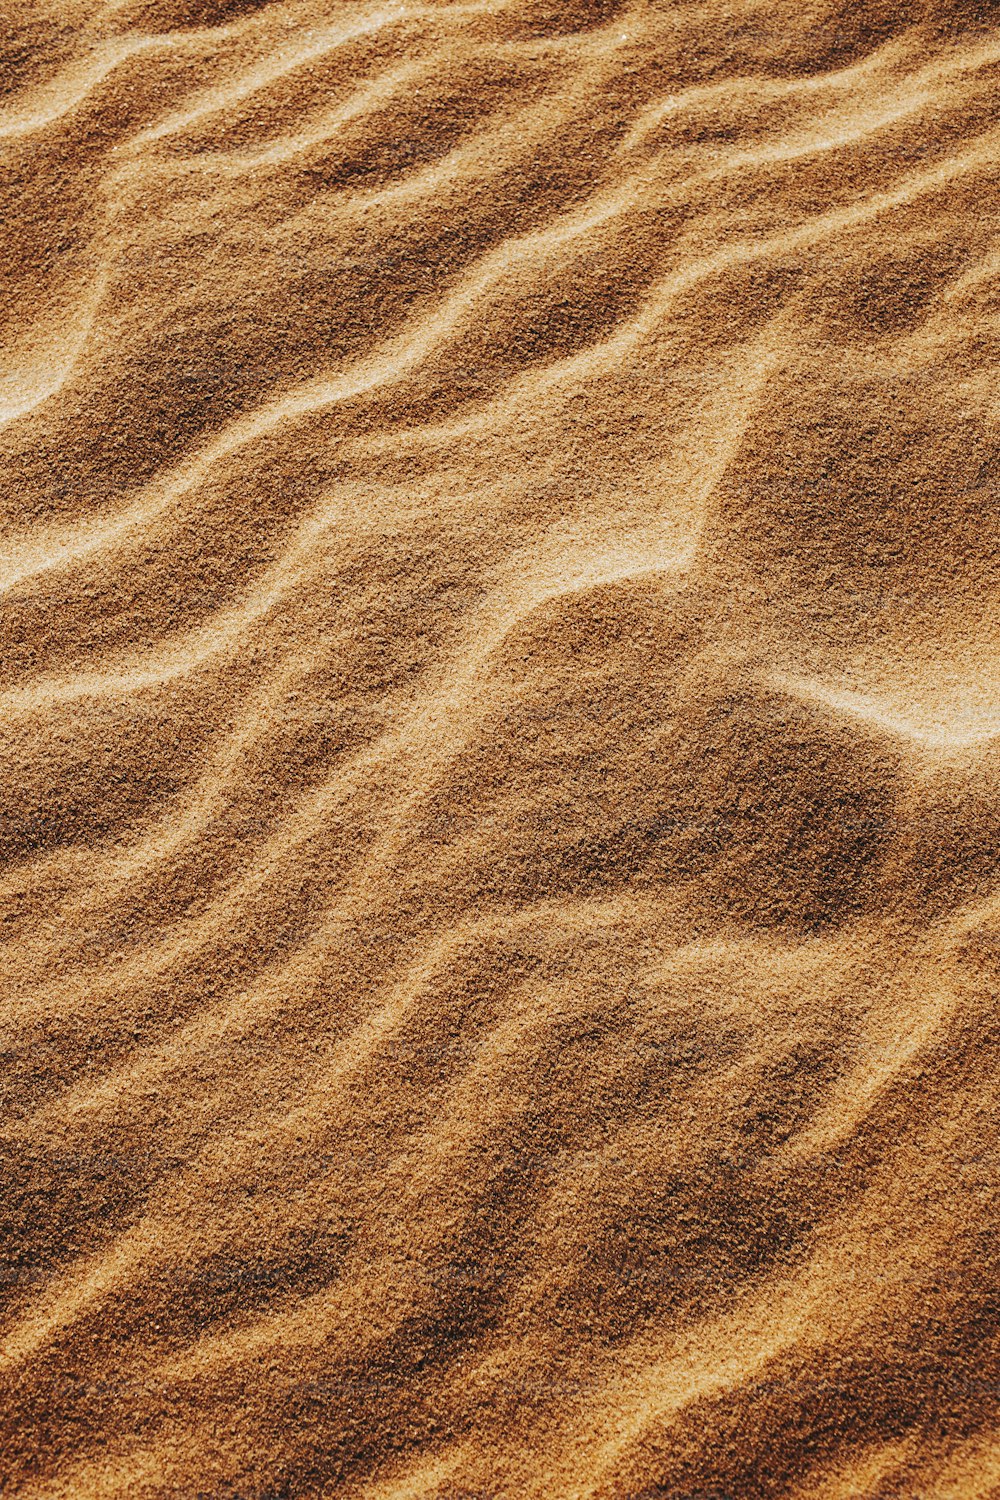 ein Sandstrand, der mit viel Sand bedeckt ist